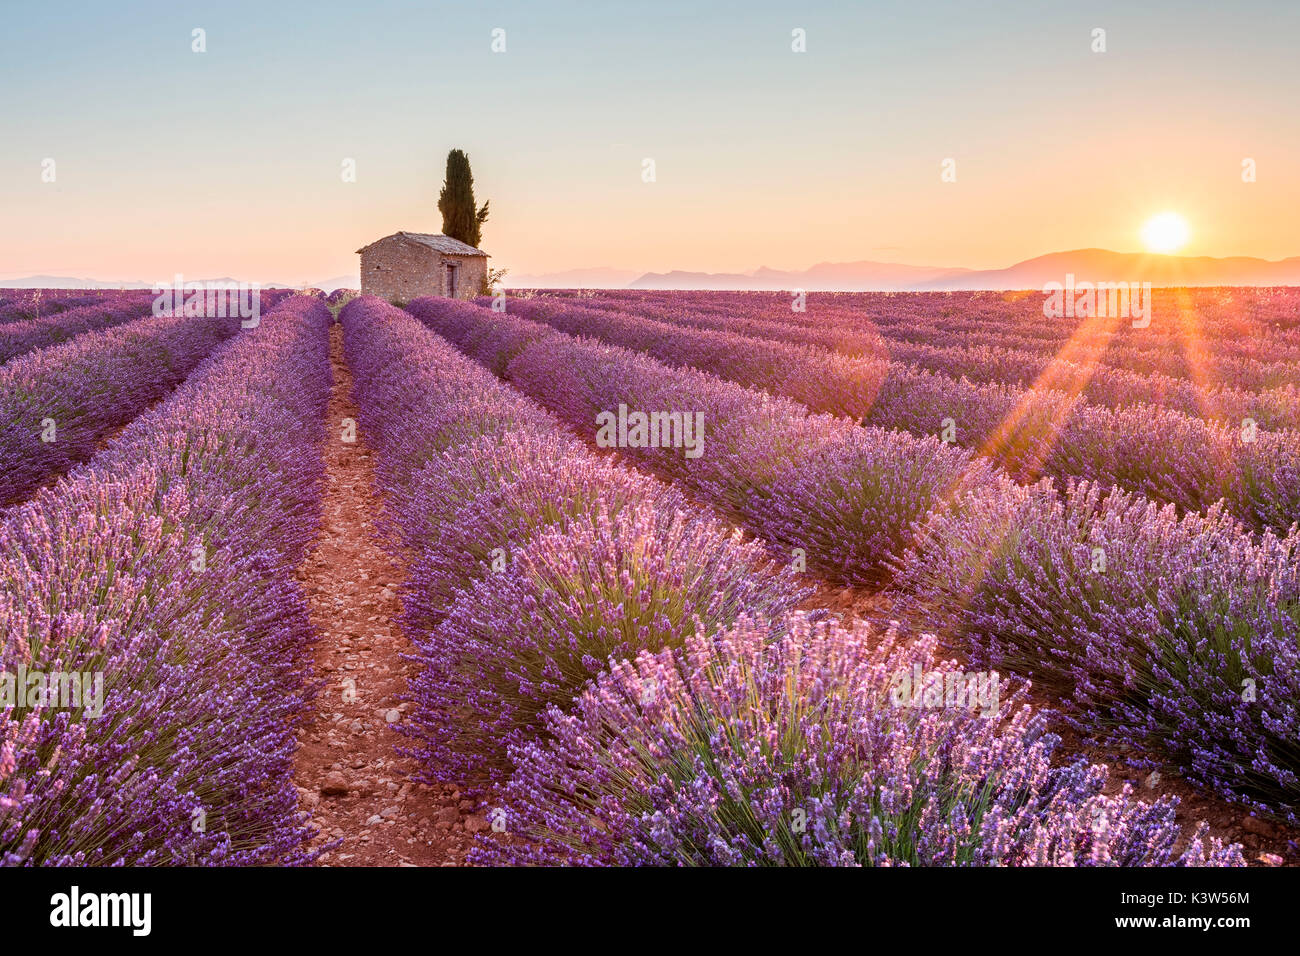 Das Plateau von Valensole, Provence, Frankreich. Sonnenaufgang in einem Lavendelfeld in der Blüte mit einsamen ländlichen Haus und Cypress Tree, sunburst. Stockfoto